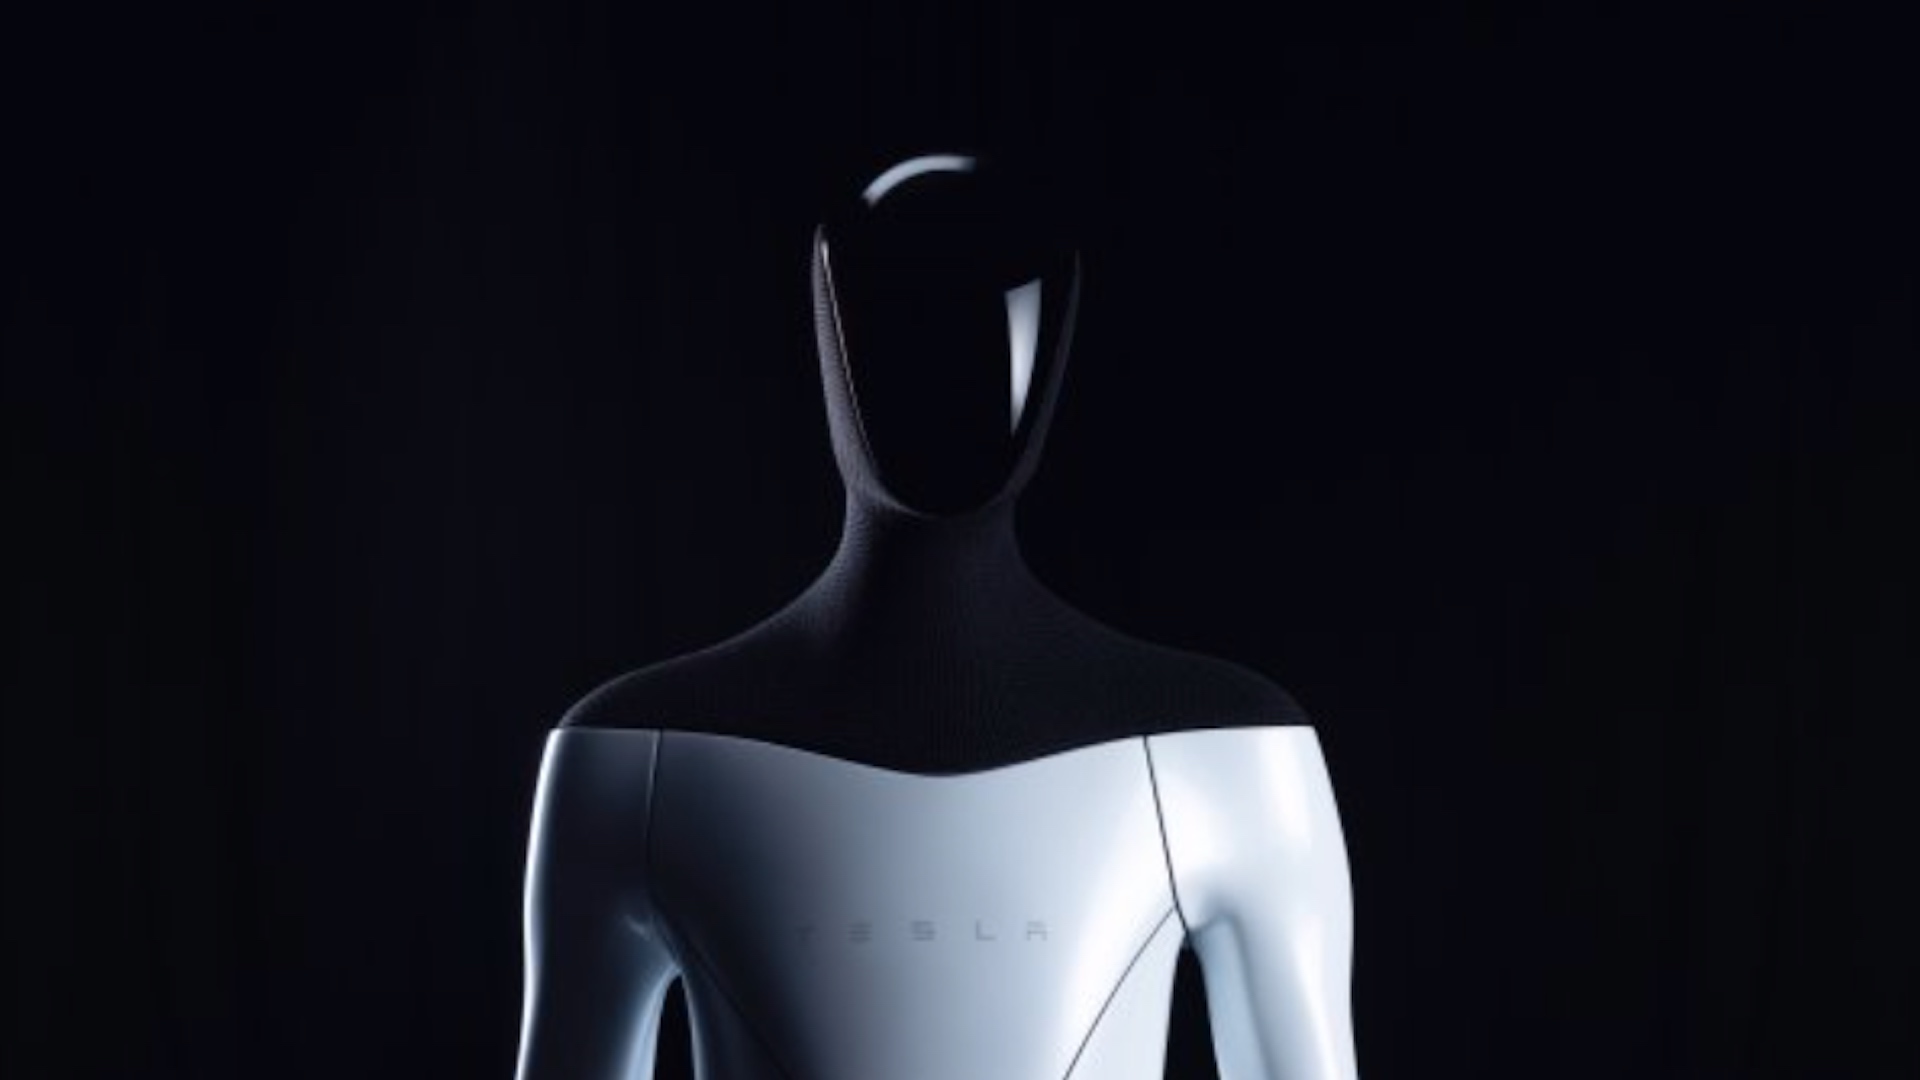 #MañanasX: Elon Musk presentó el diseño de un robot humanoide para su marca Tesla